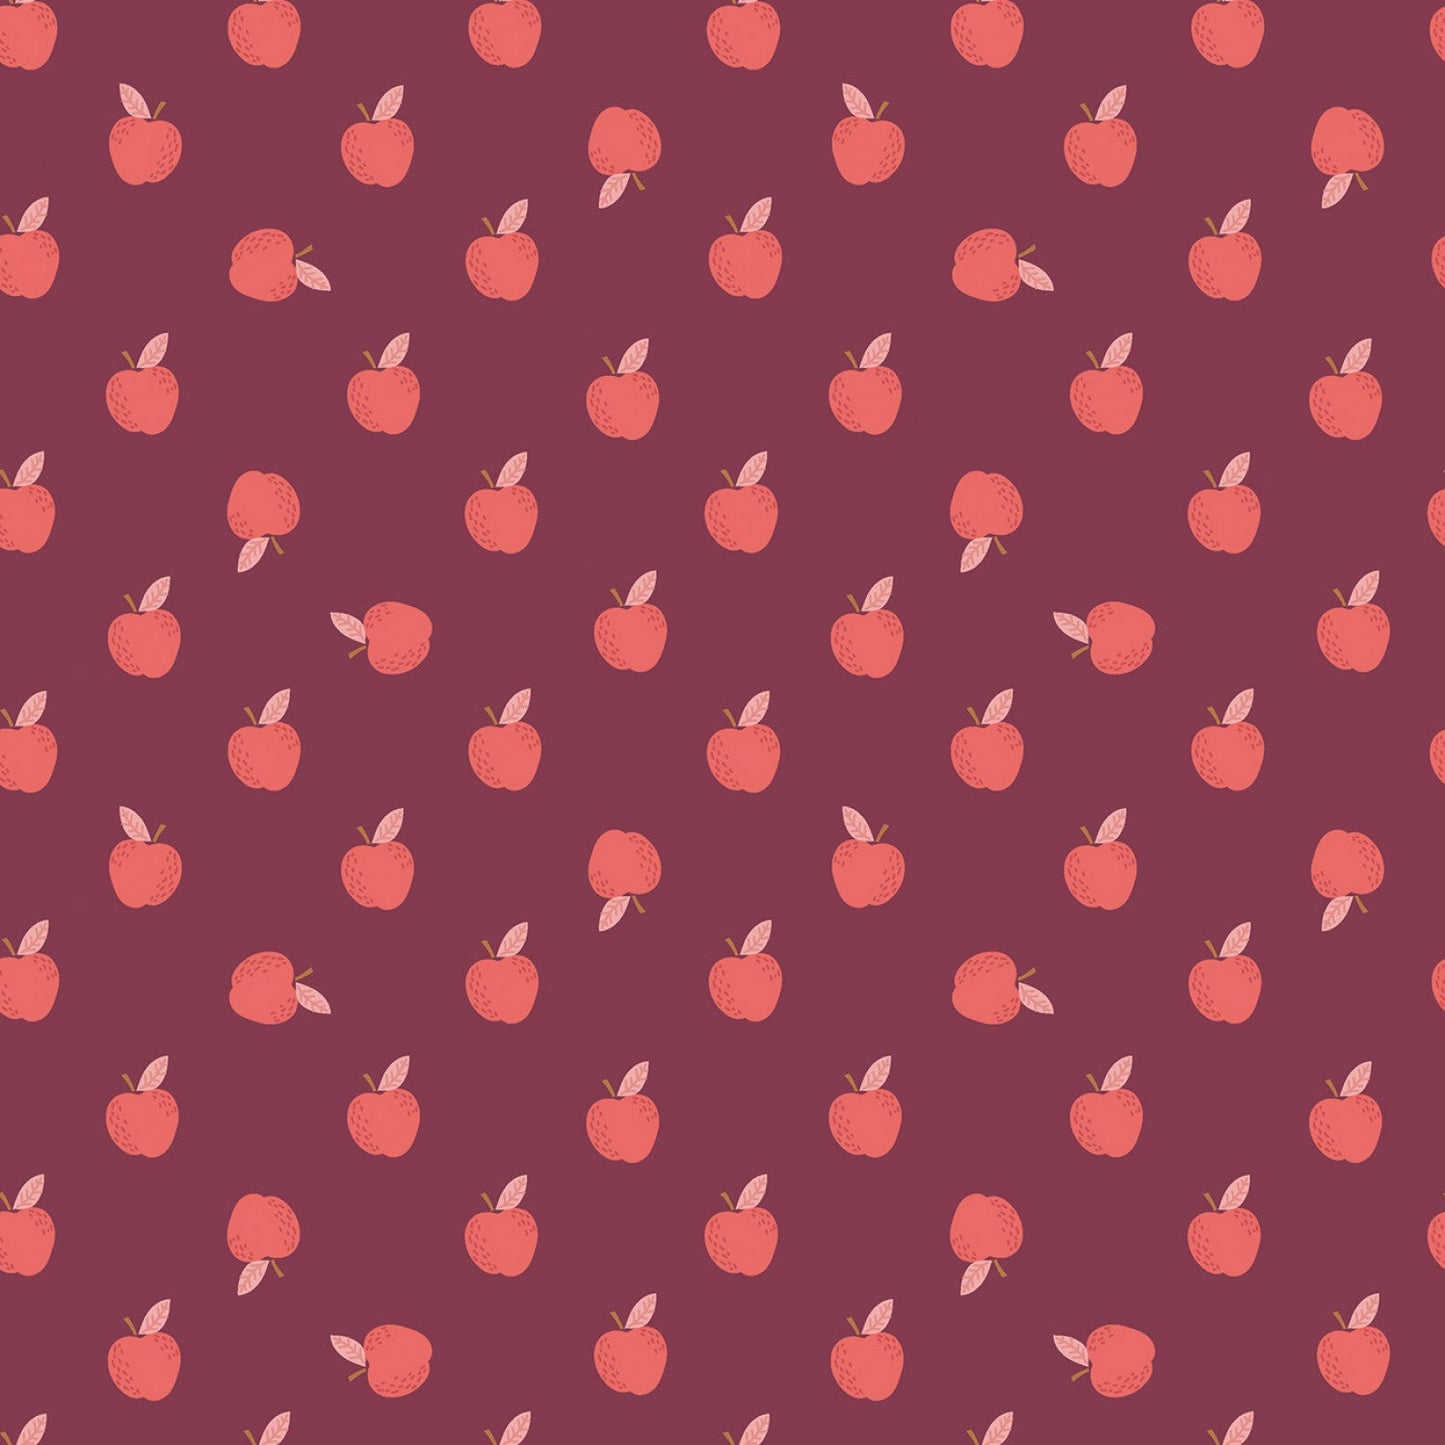 Sweetbriar Apples Wine ½ yd-Fabric-Spool of Thread